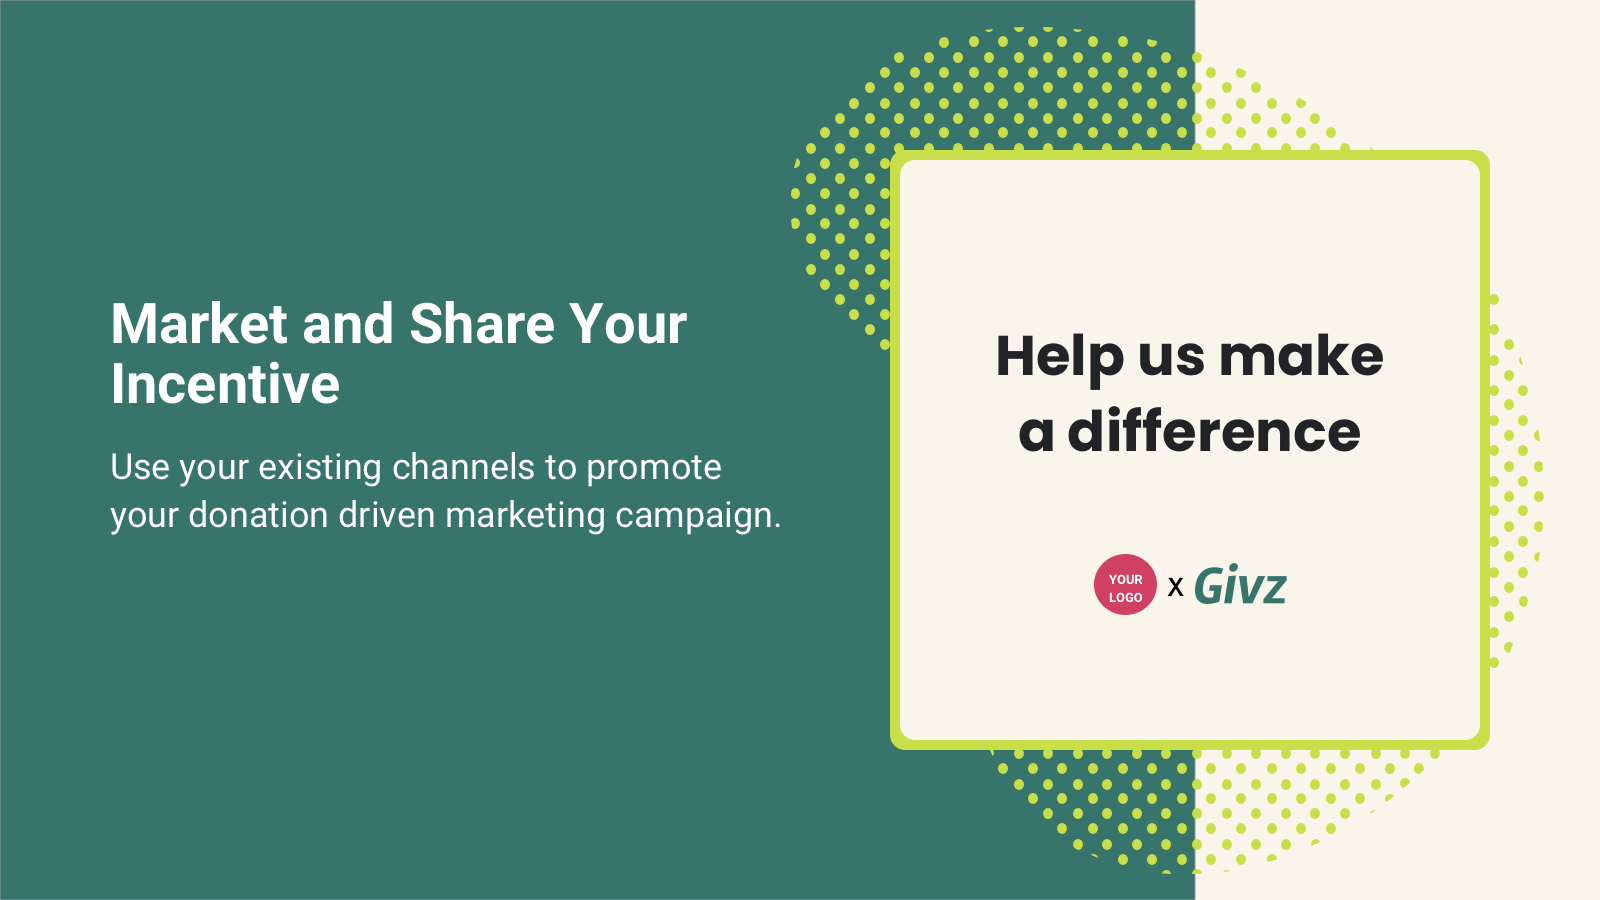 Promociona campañas de marketing de donaciones en tus canales de marca